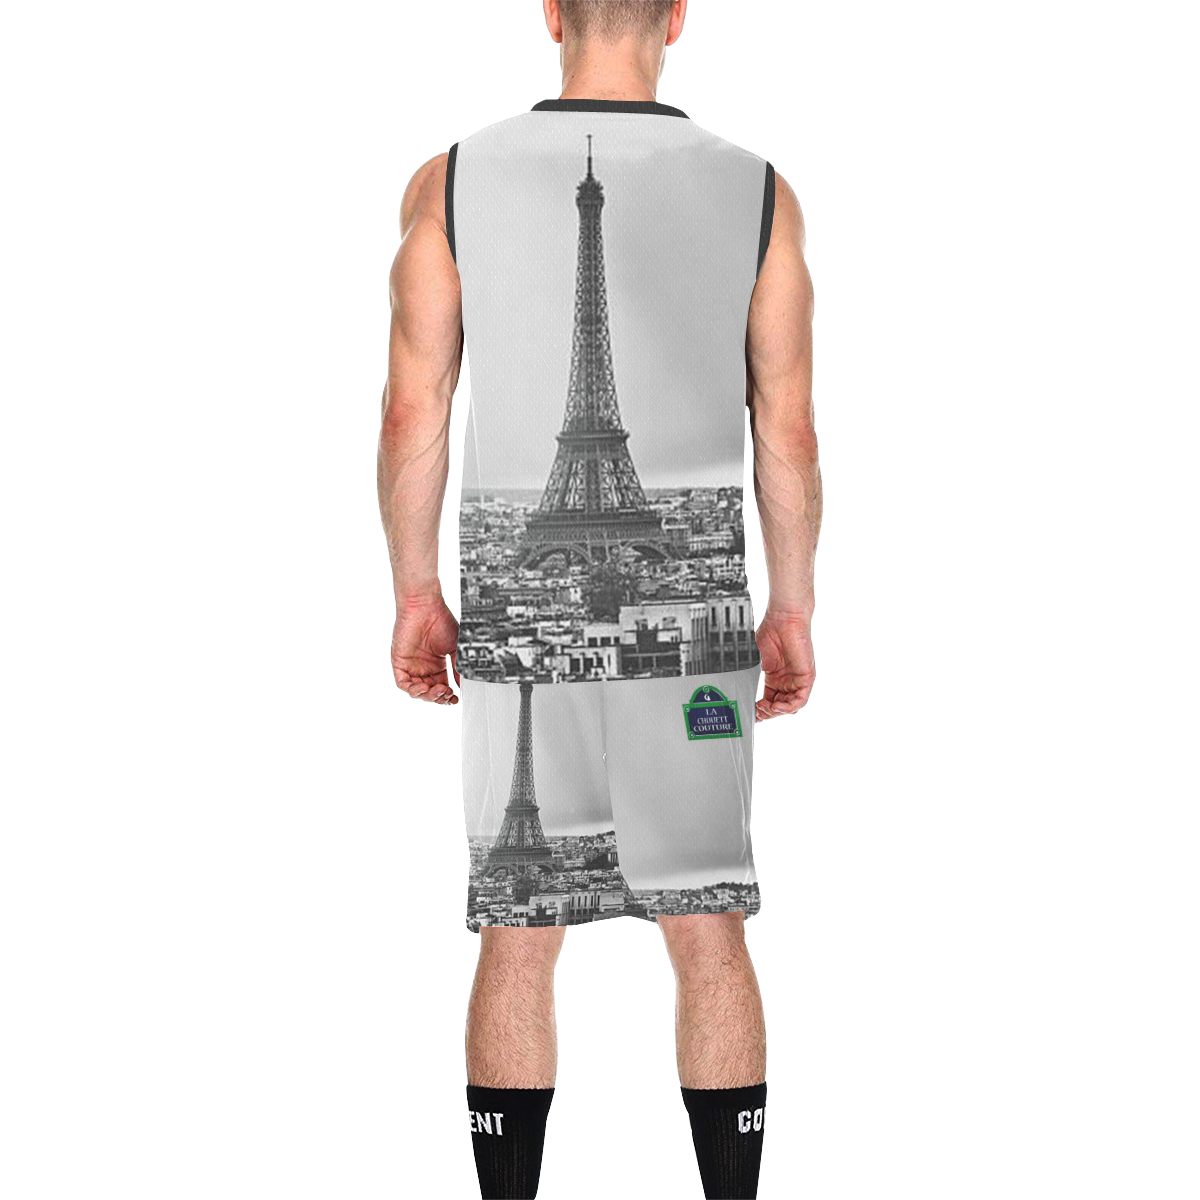 RUE DE PARIS All Over Print Basketball Uniform